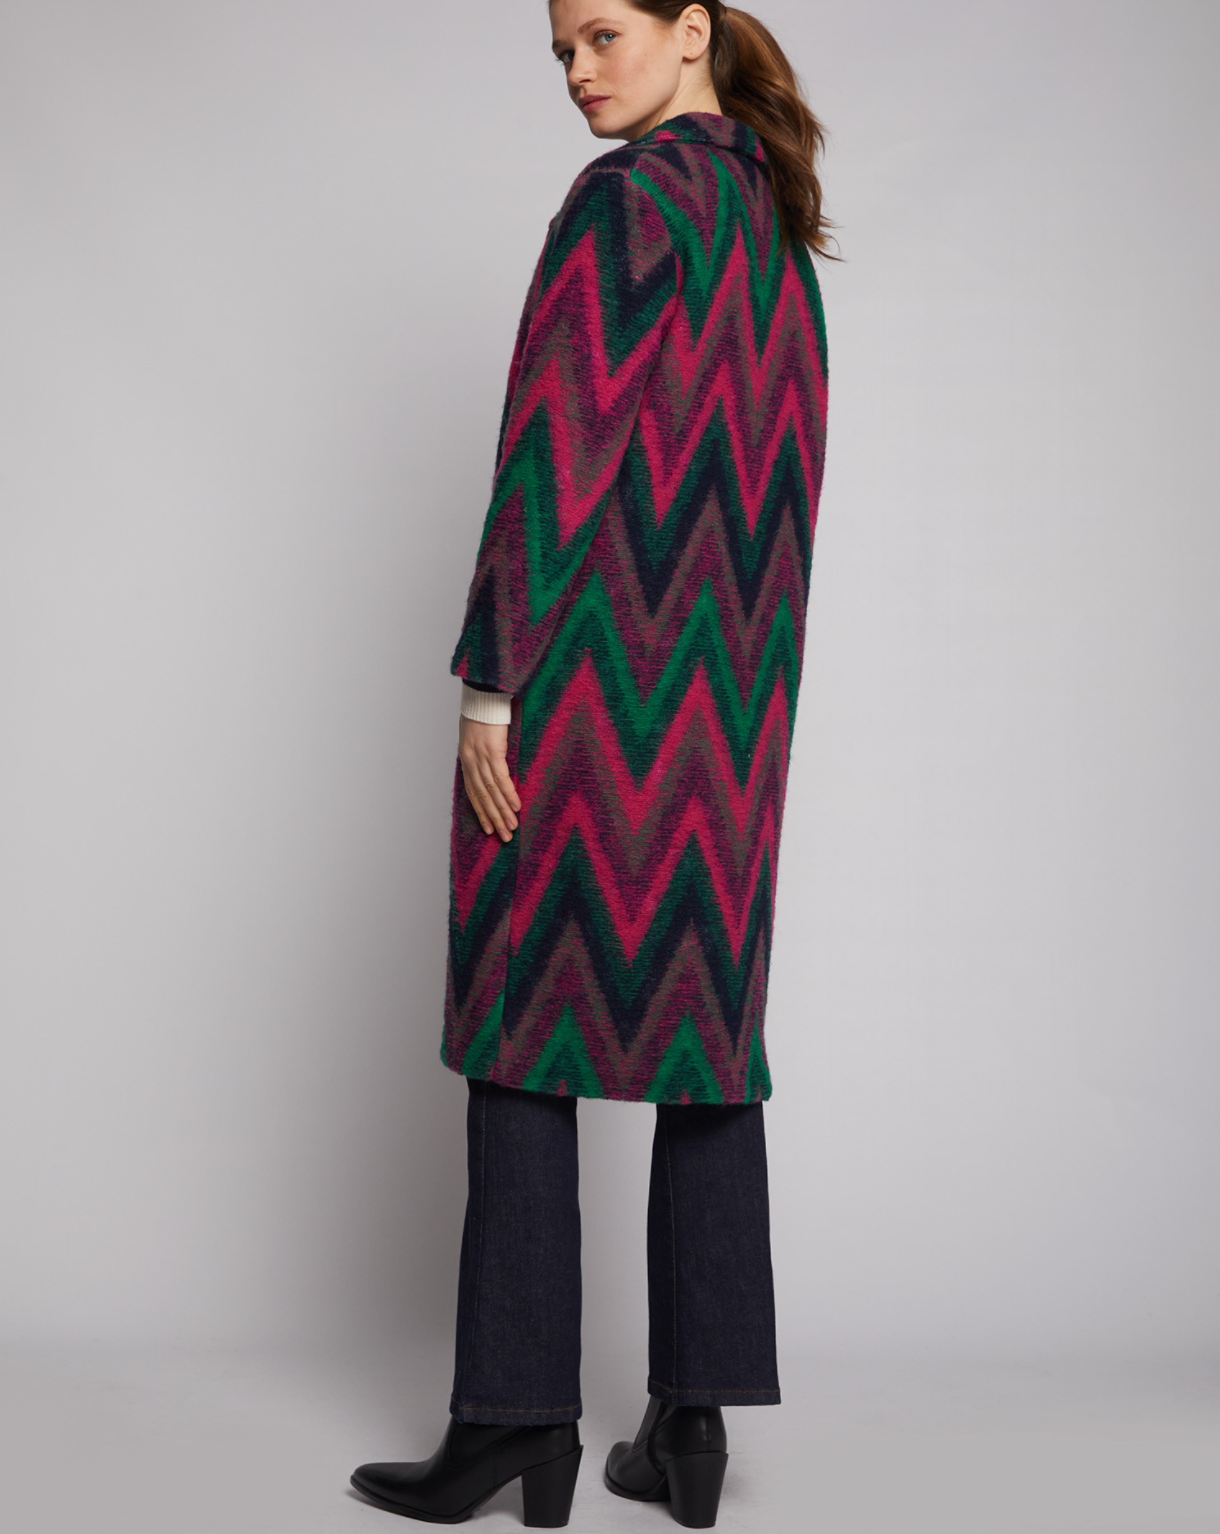 Yana Italian Coat Wool Blend Zigzag